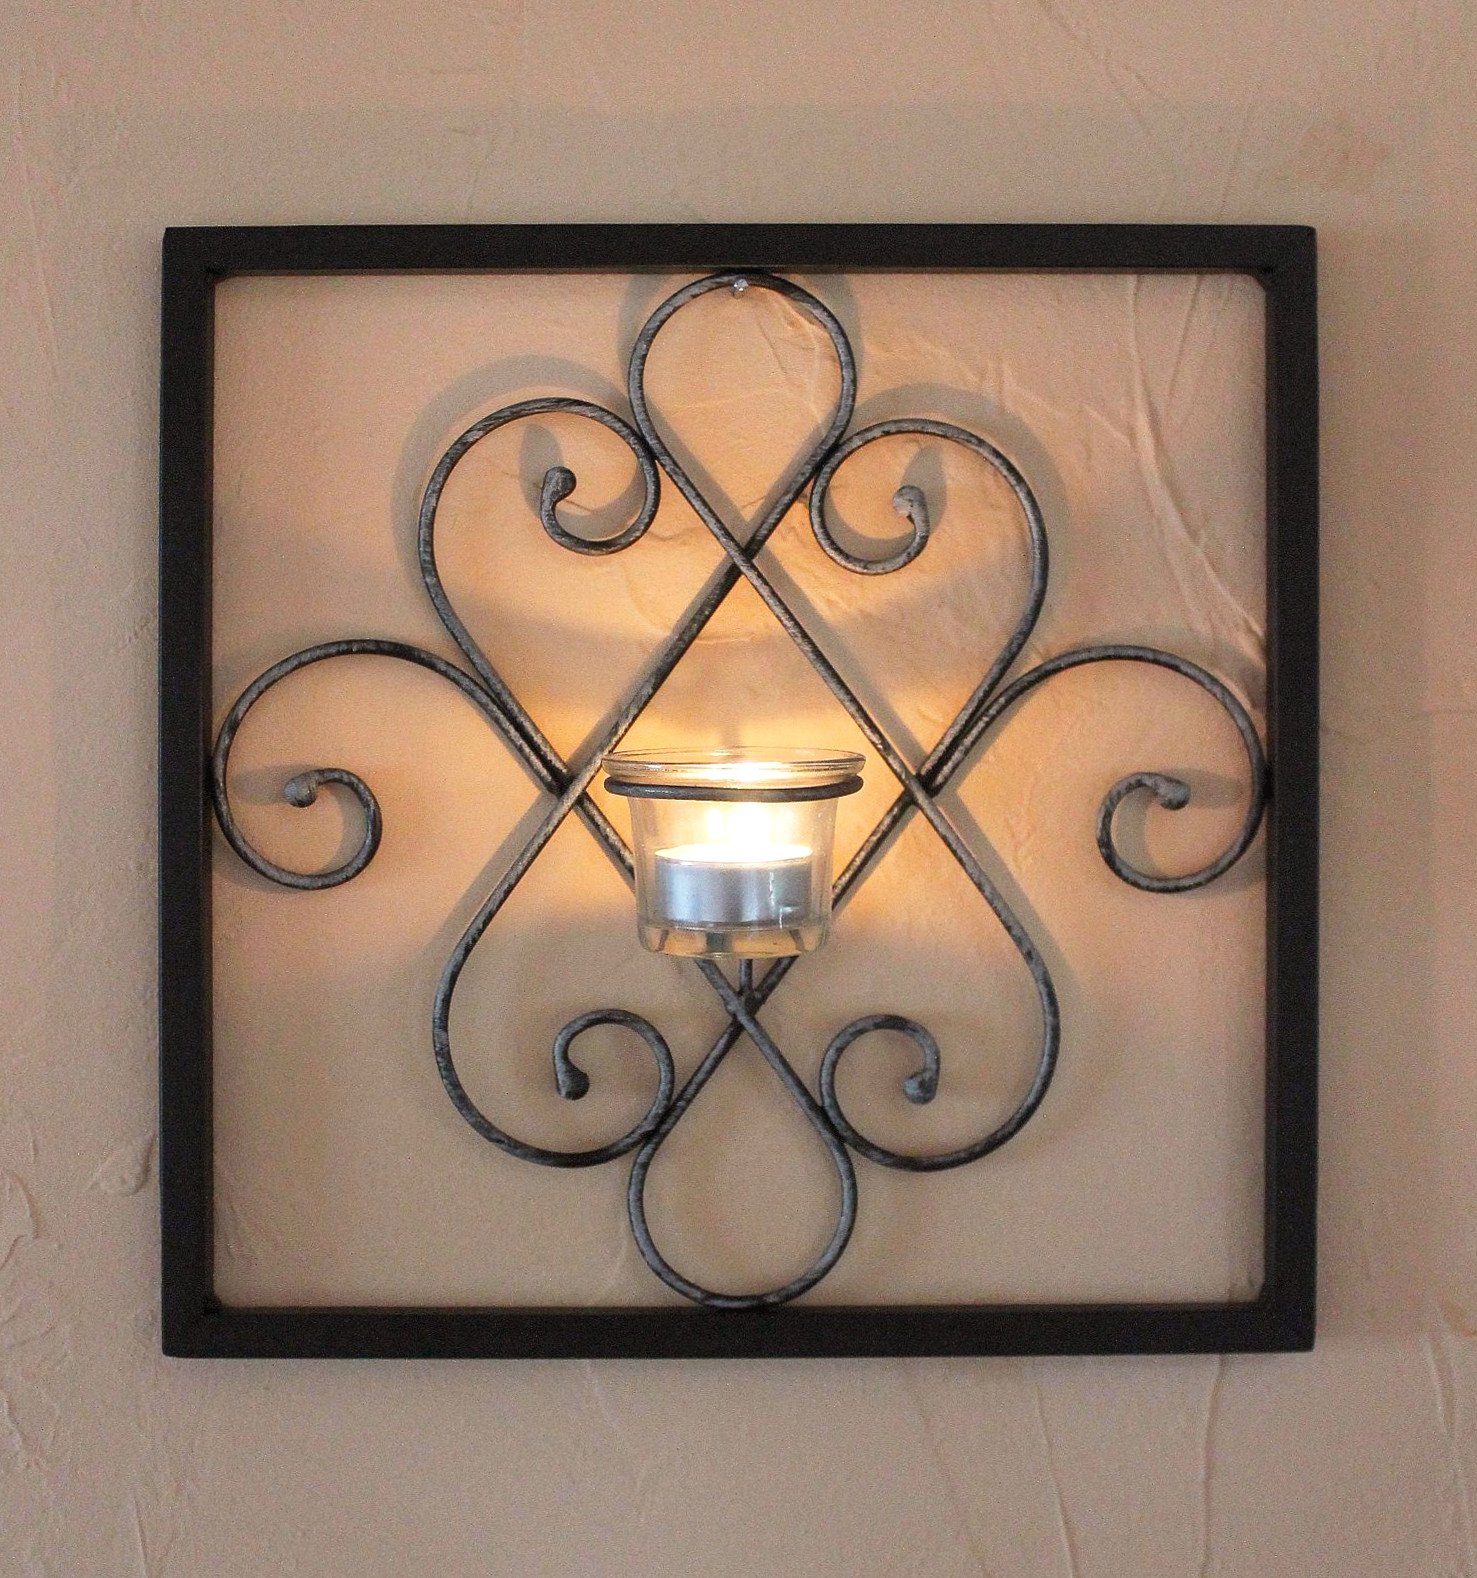 Wandteelichthalter DanDiBo Arabika Wandleuchter Wand 31 Teelichthalter cm Schwarz Wandkerzenhalter Metall Wandkerzenhalter Kerzenhalter